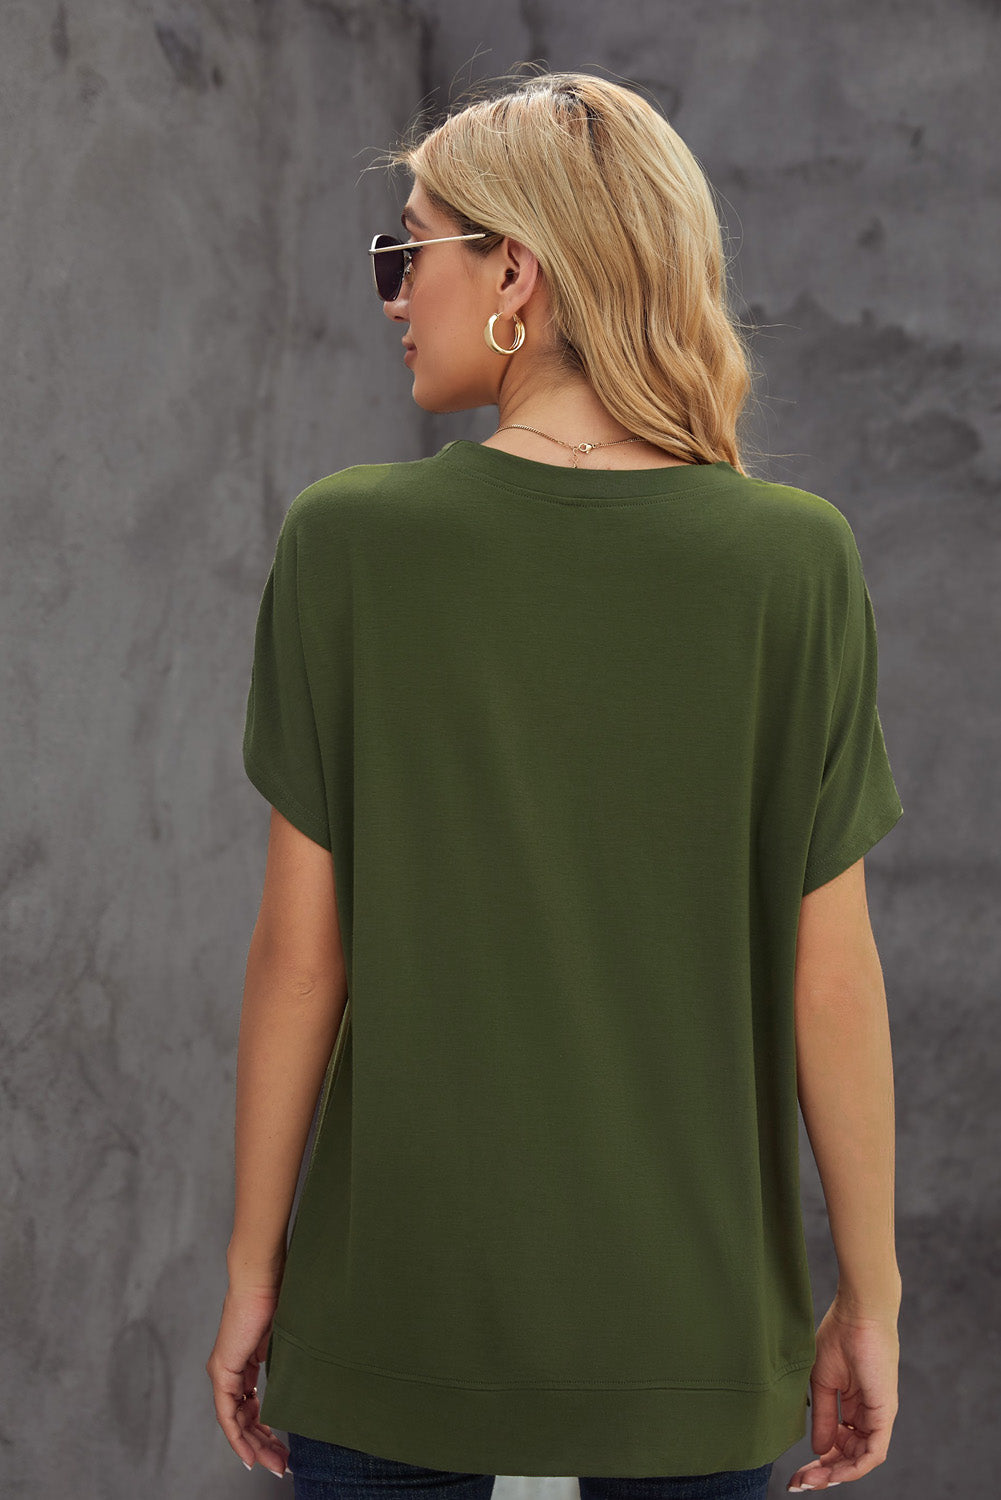 Grünes, kurzärmliges, einfarbiges T-Shirt mit Rundhalsausschnitt